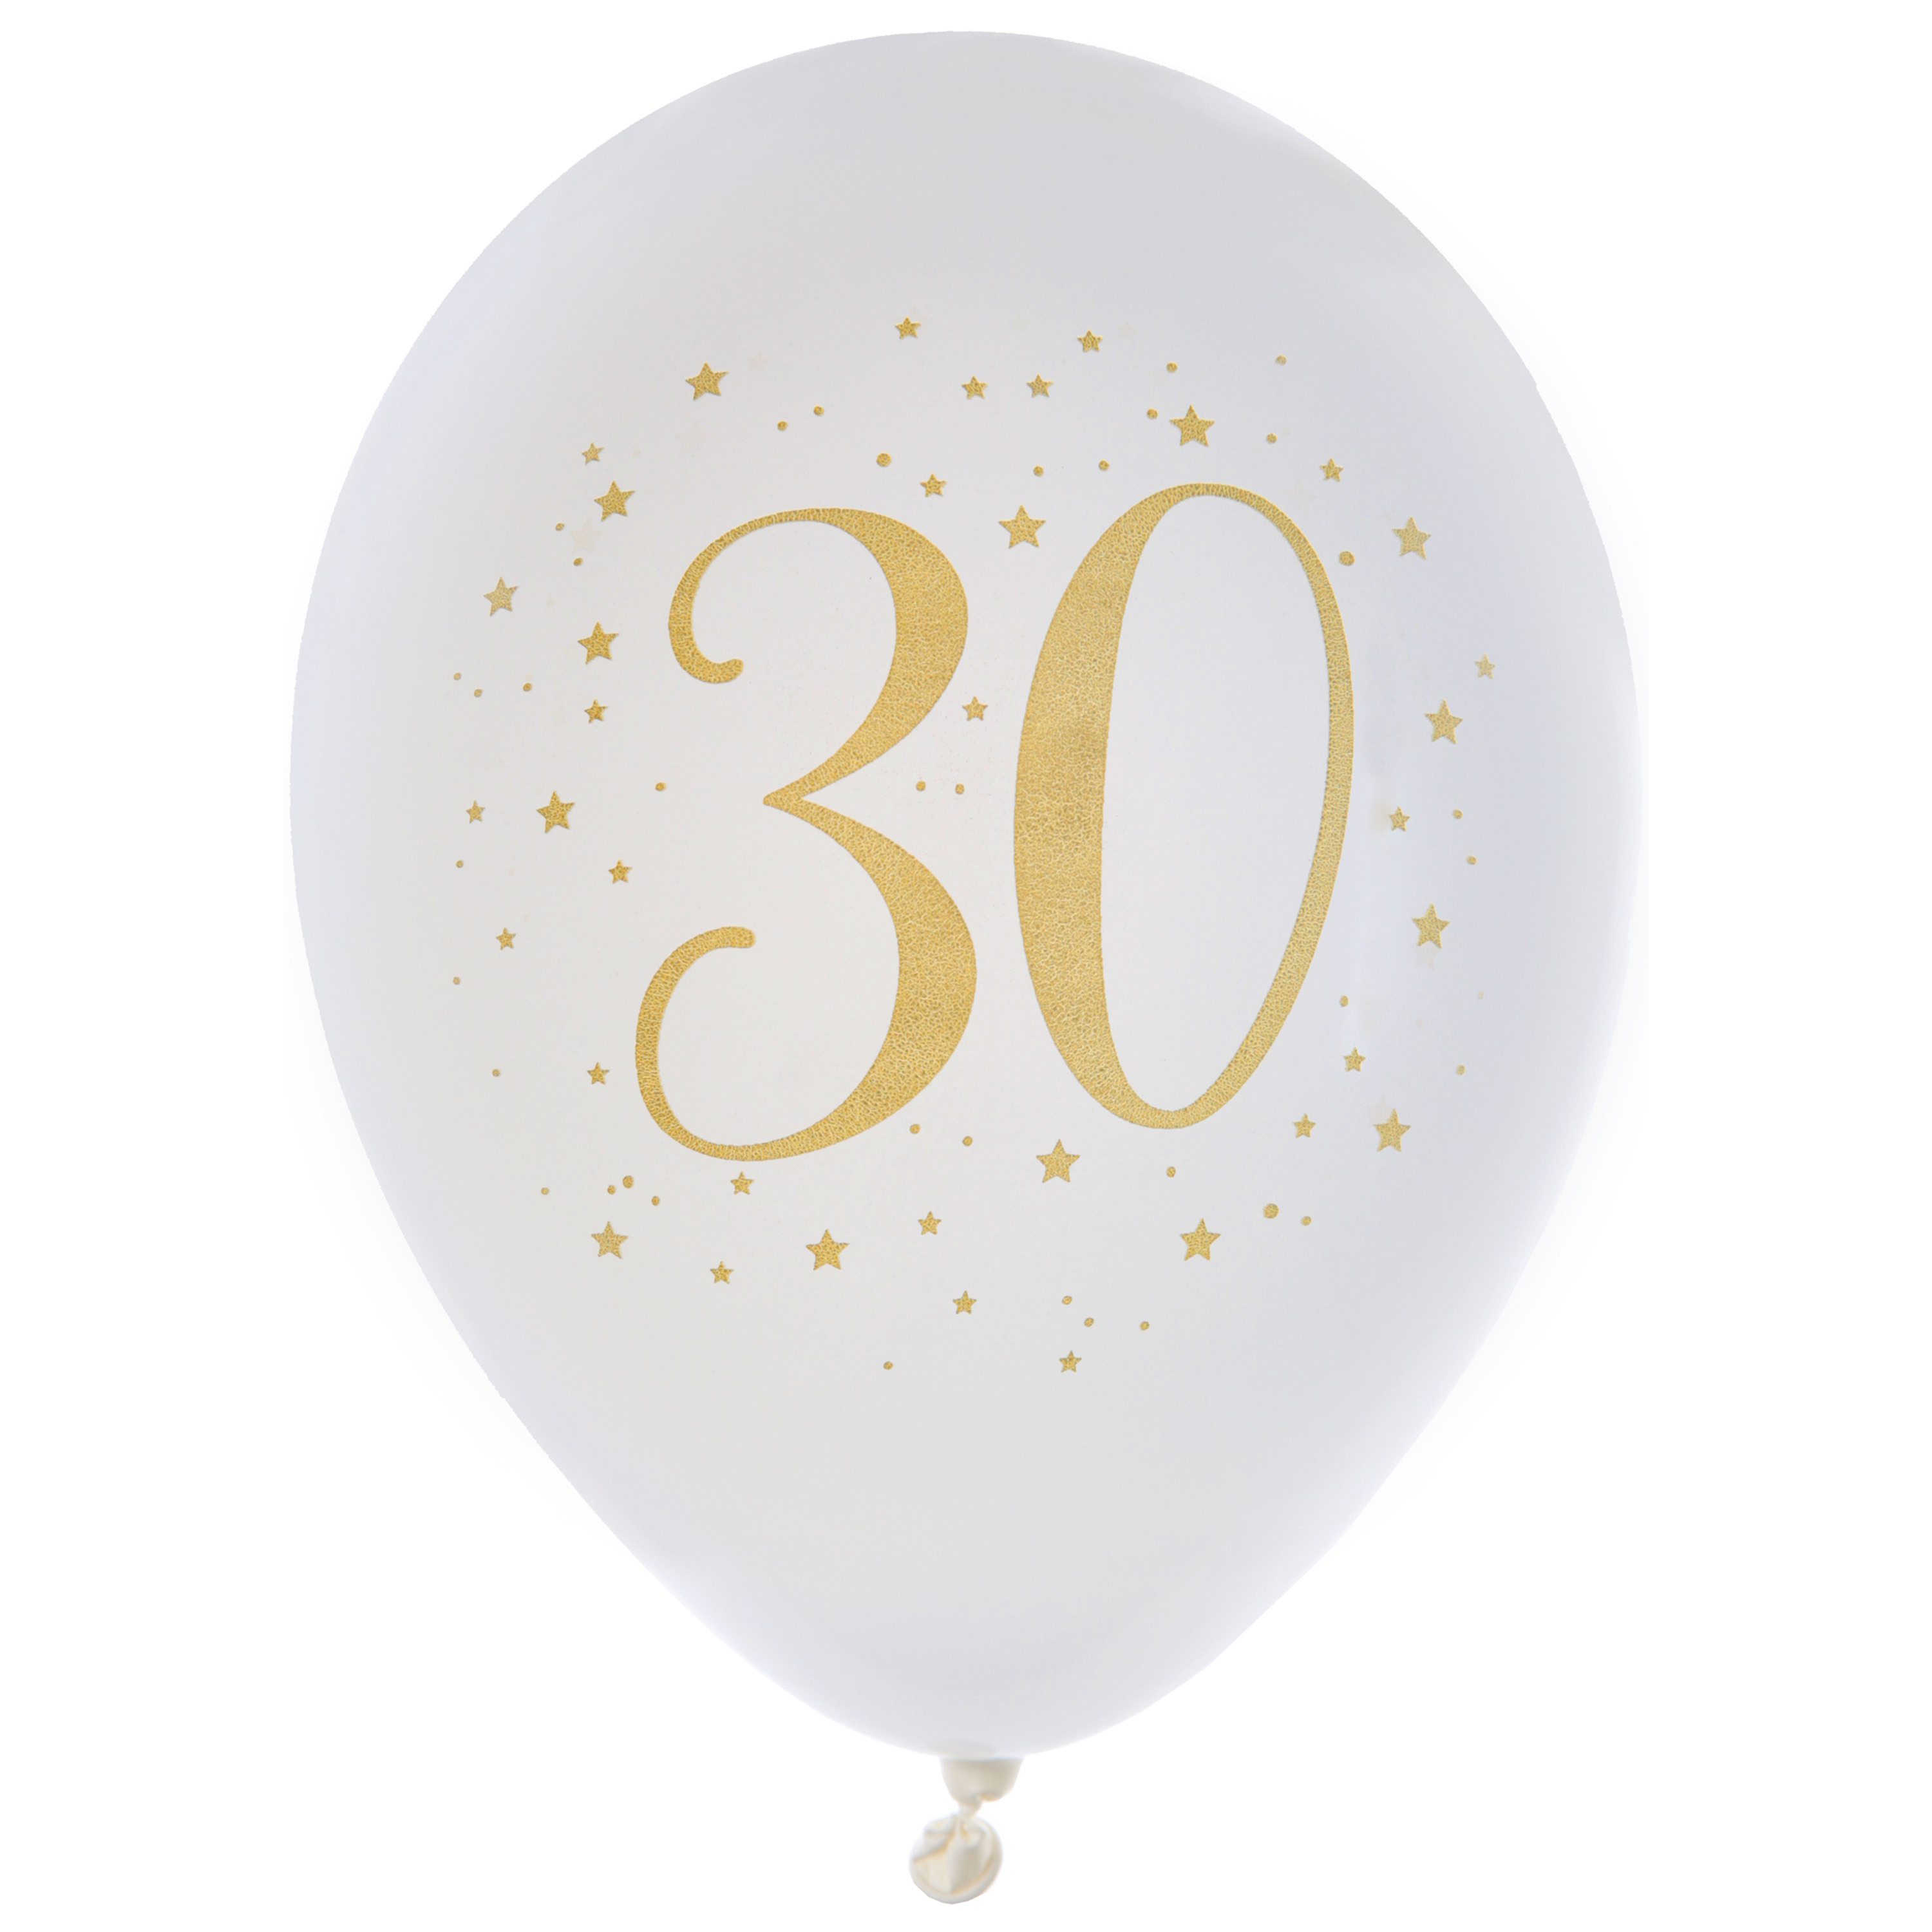 Santex verjaardag leeftijd ballonnen 30 jaar - 8x stuks - wit/goud - 23 cm - Feestartikelen